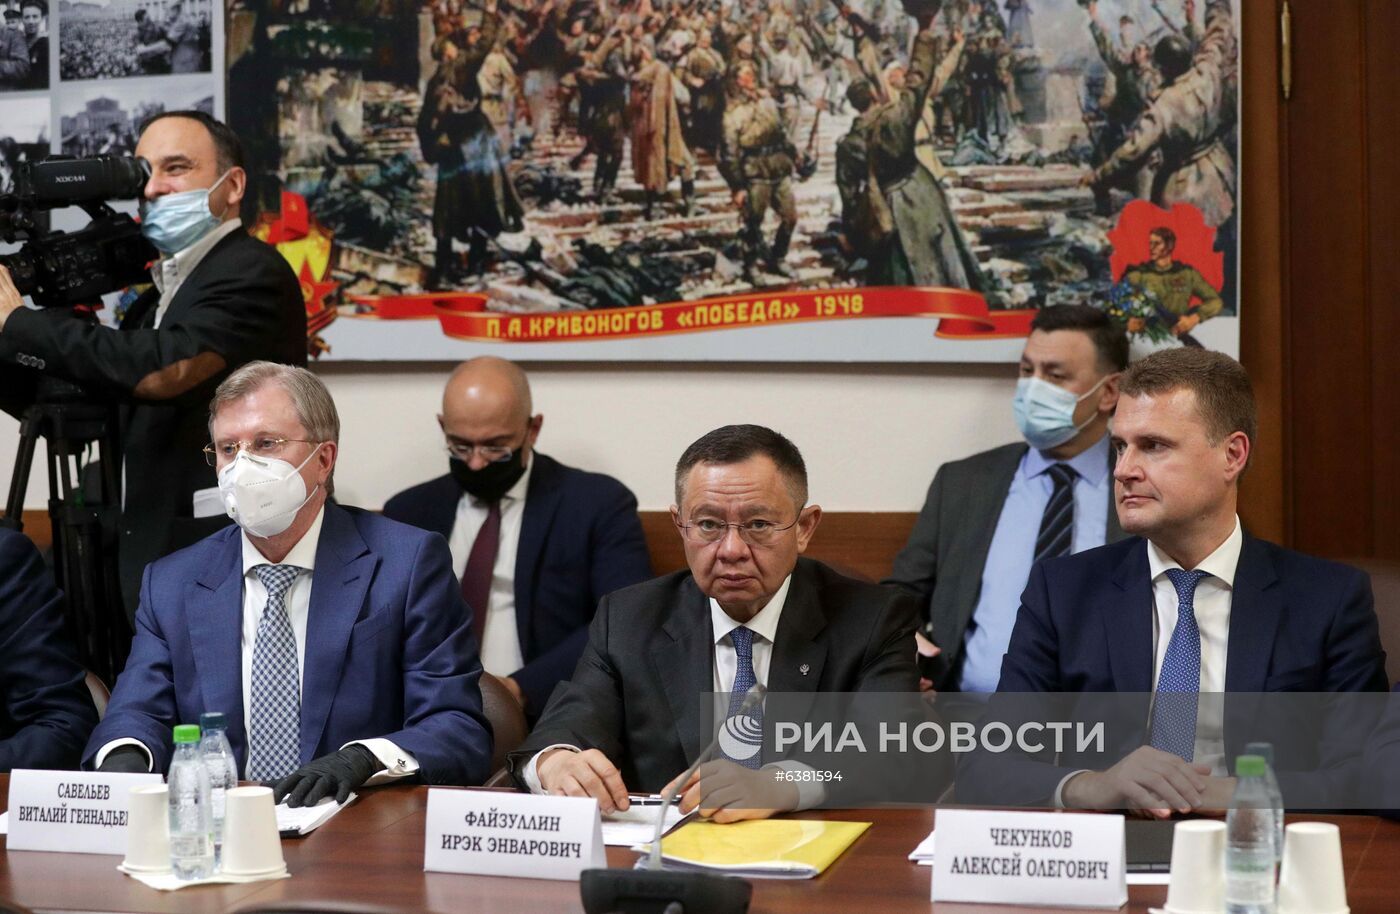 Заседания фракций Госдумы, посвященные утверждению кандидатур в члены Правительства РФ